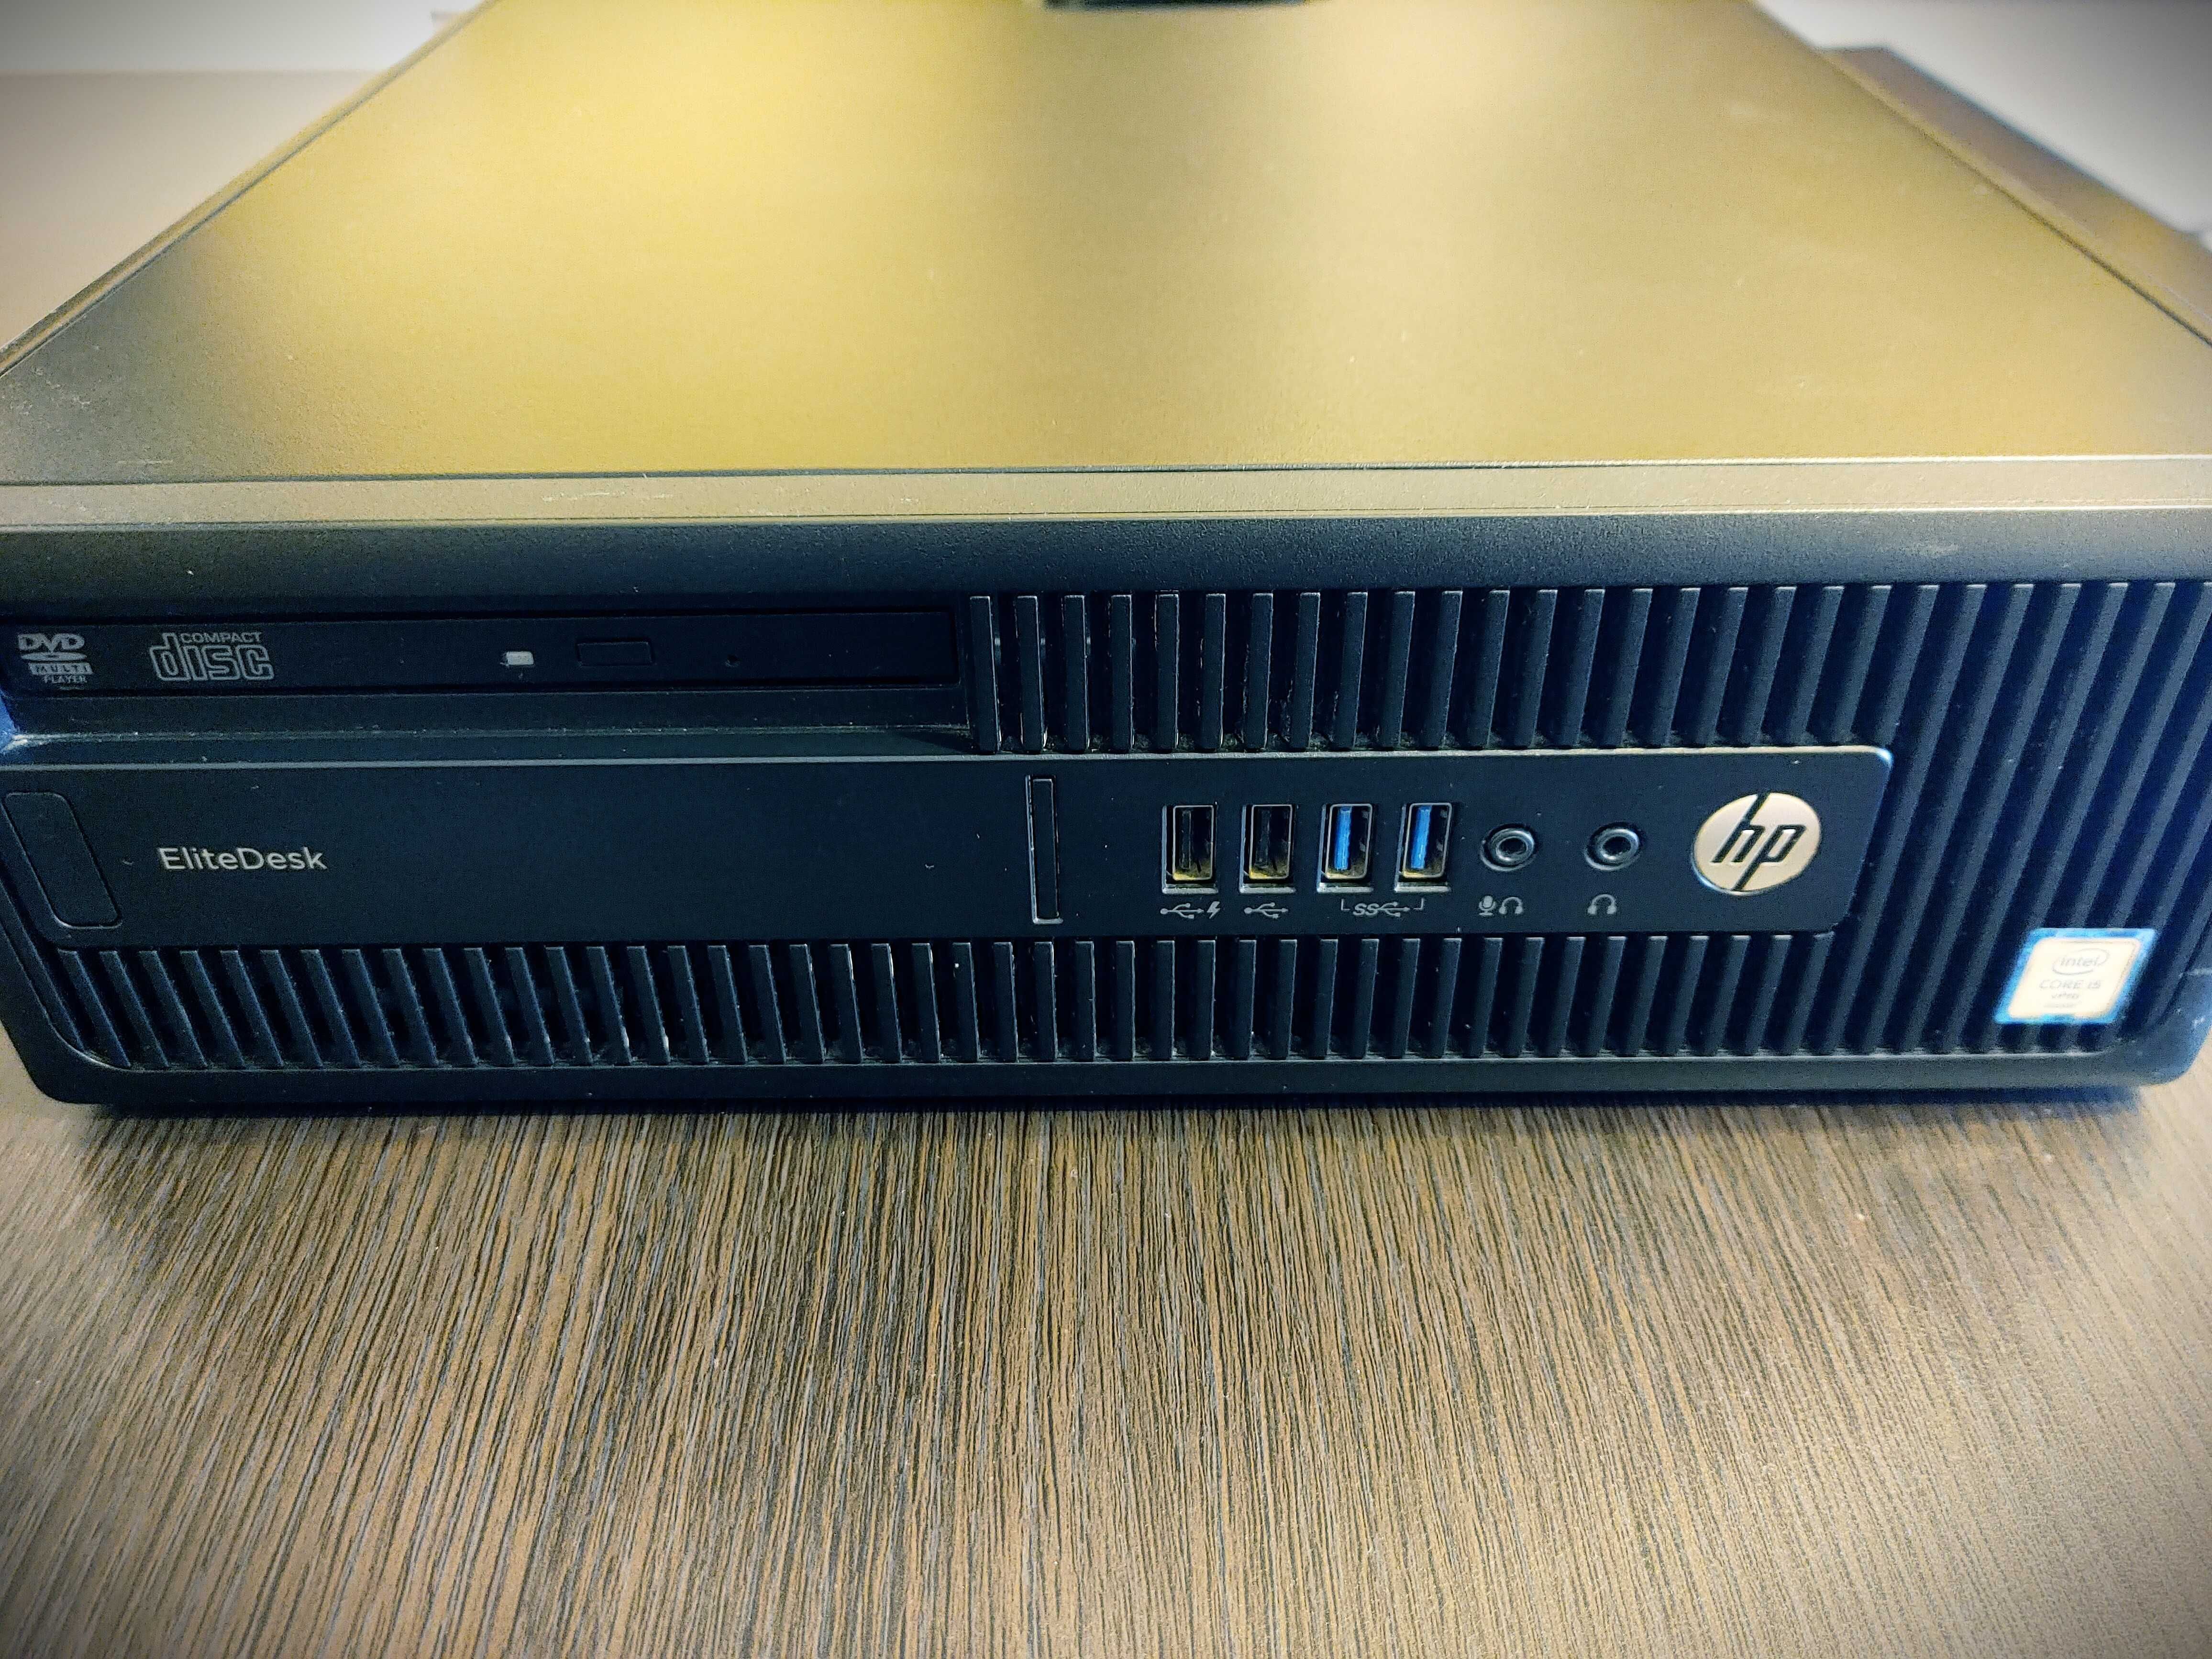 Komputer HP Elitedesk 800 G2 SFF, i5-6600 vPro, SSD 256GB